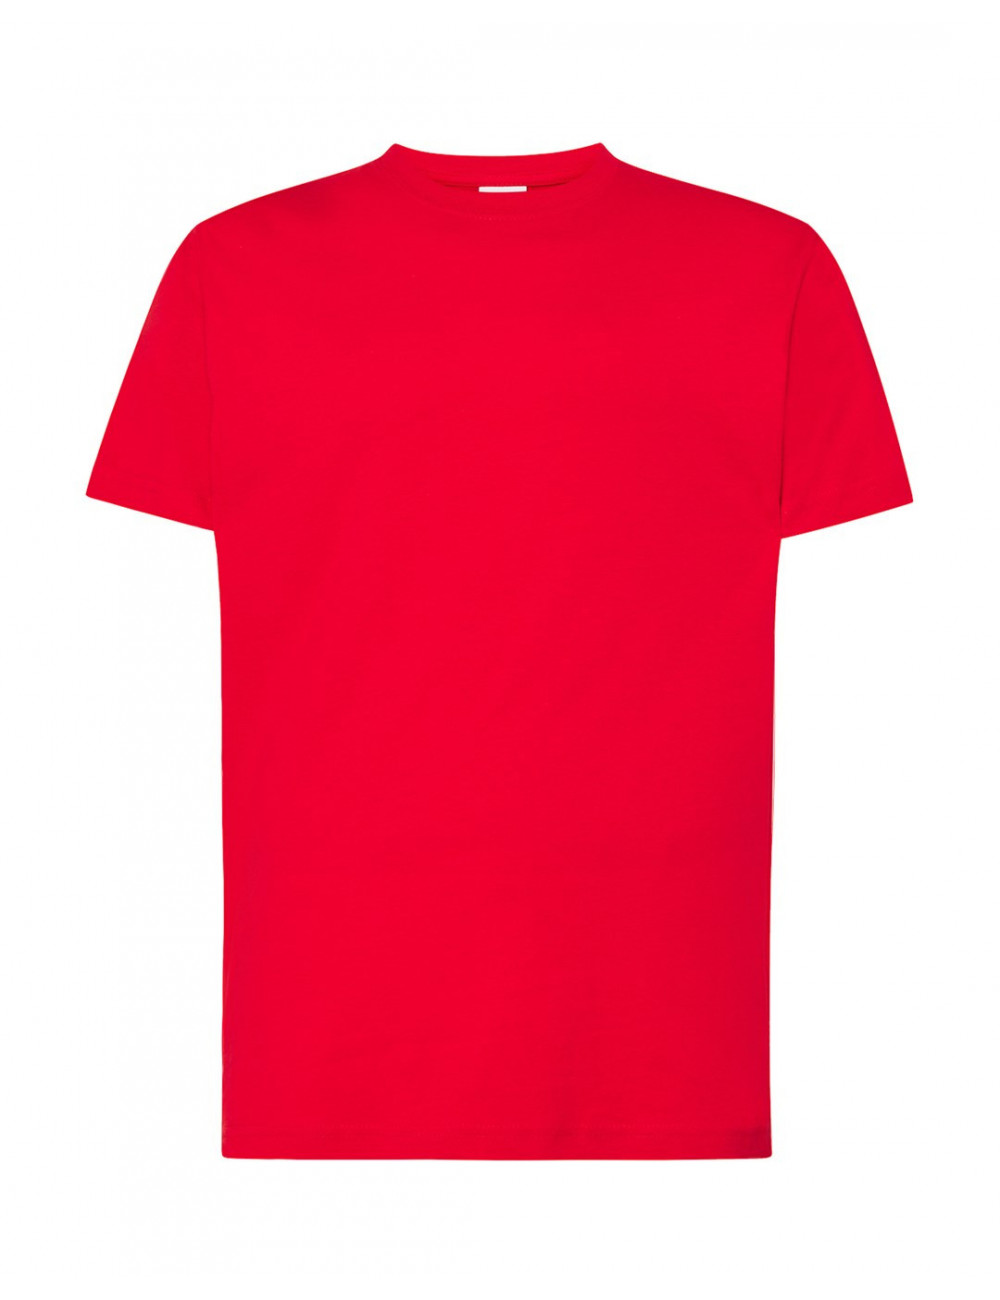 Koszulka męska tsua 150 slim fit t-shirt czerwony Jhk